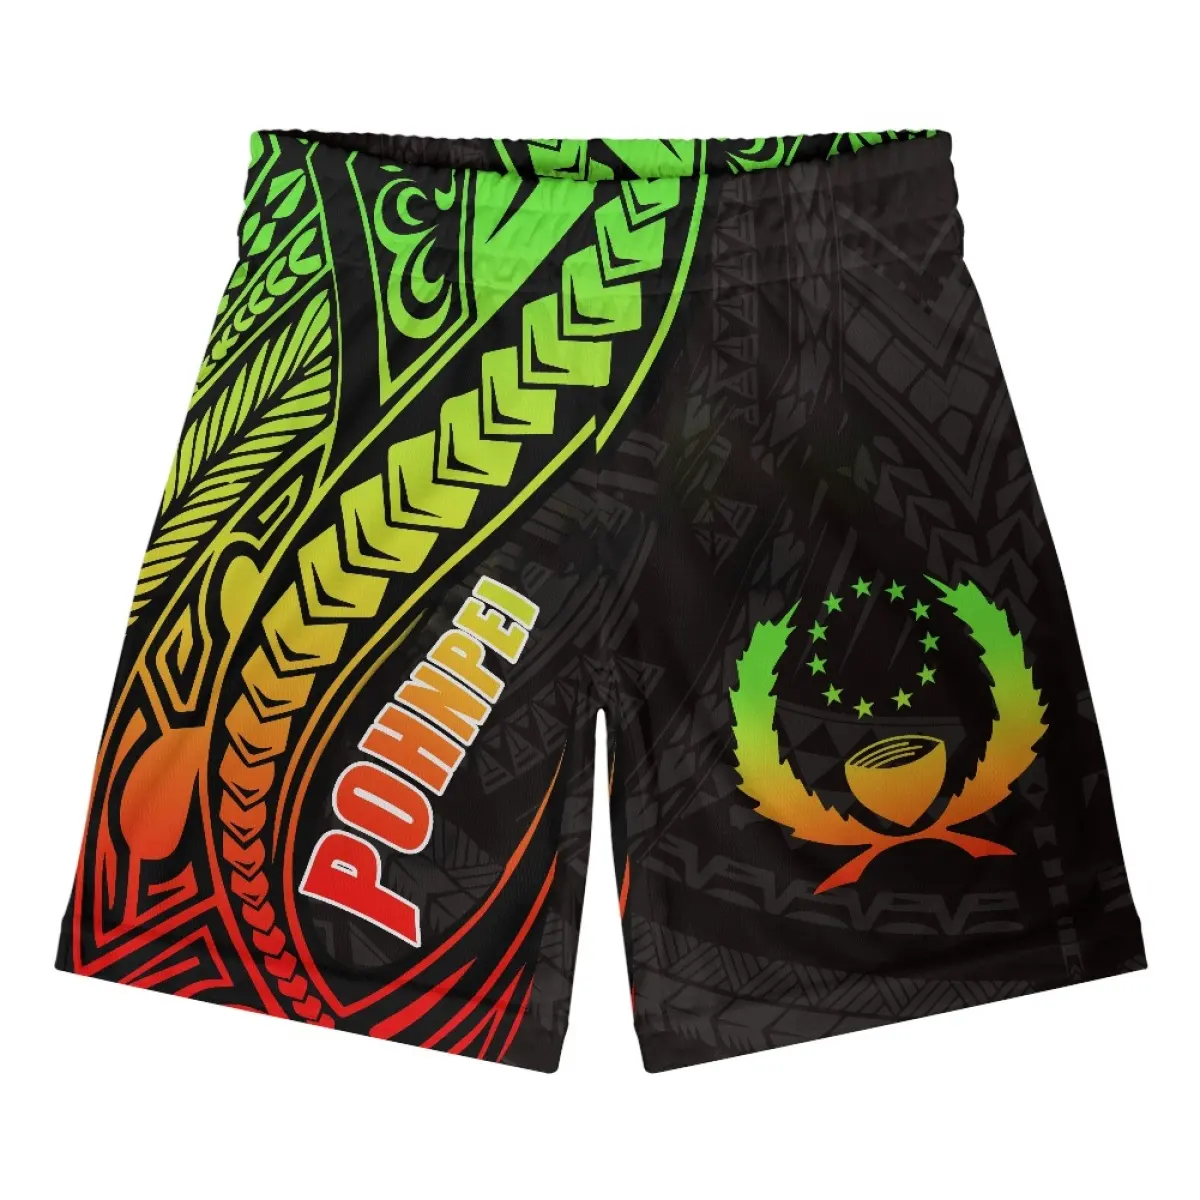 Pantaloni corti da uomo personalizzati a basso prezzo all'ingrosso Oceania Island Pohnpei stampa Shorts Comfort a asciugatura rapida abbigliamento estivo da spiaggia